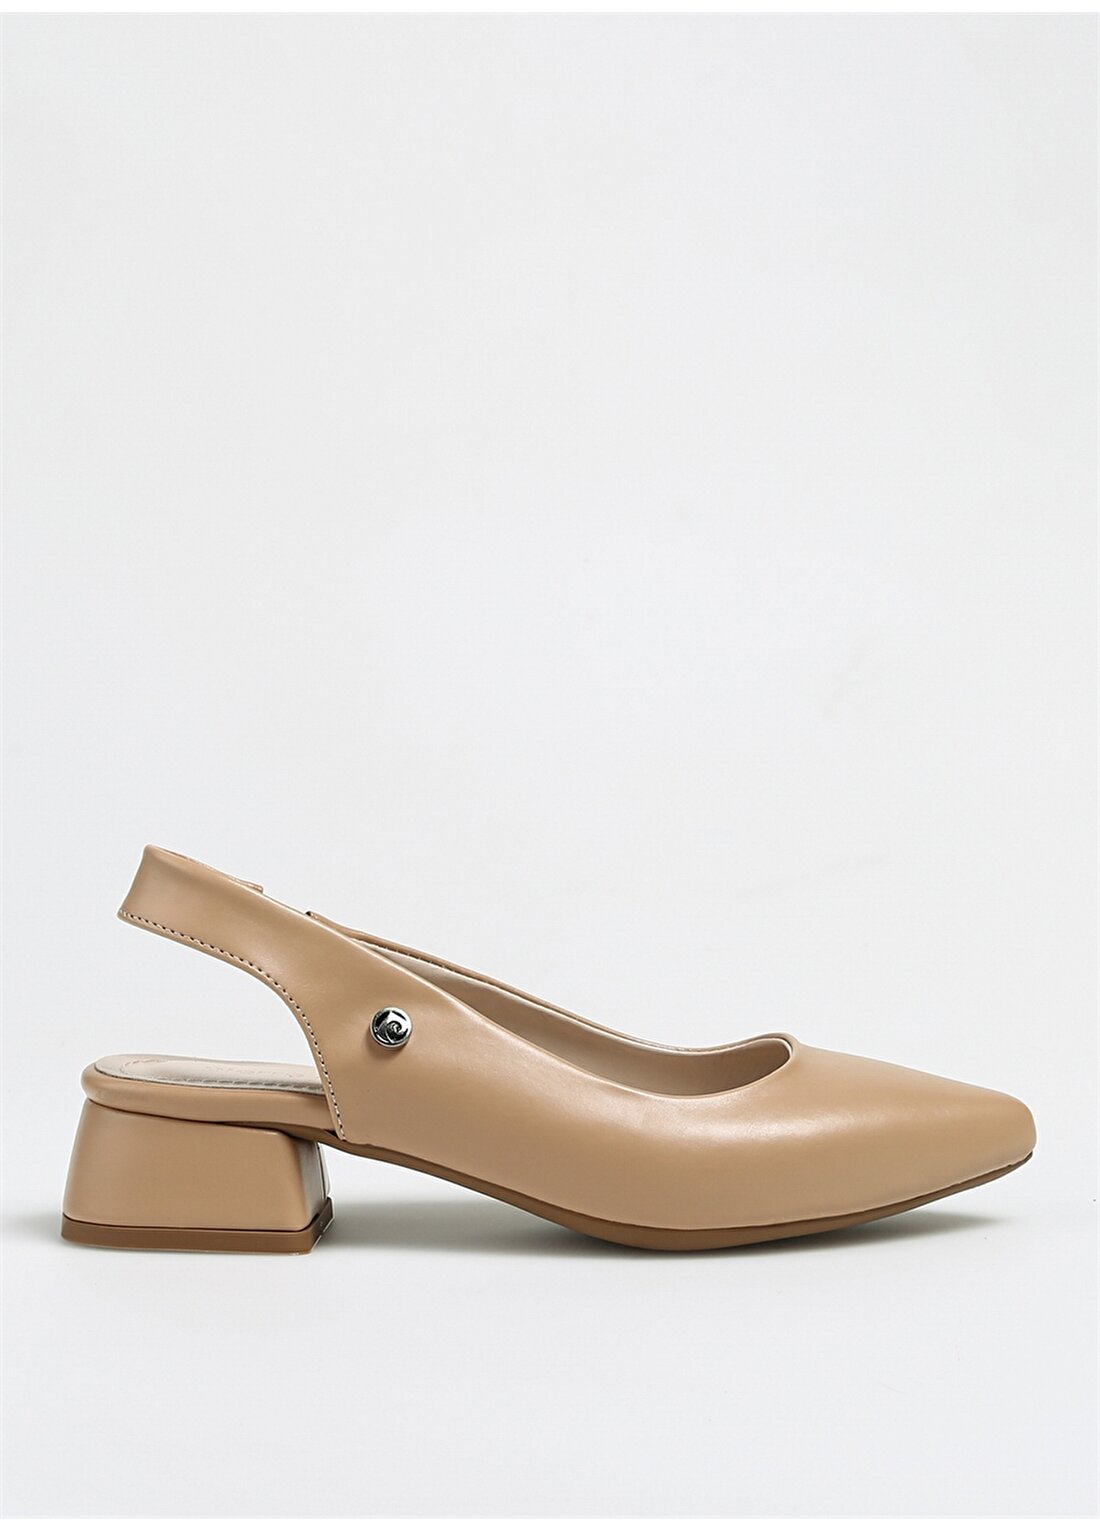 Pierre Cardin Bej Kadın Topuklu Ayakkabı PC-52282